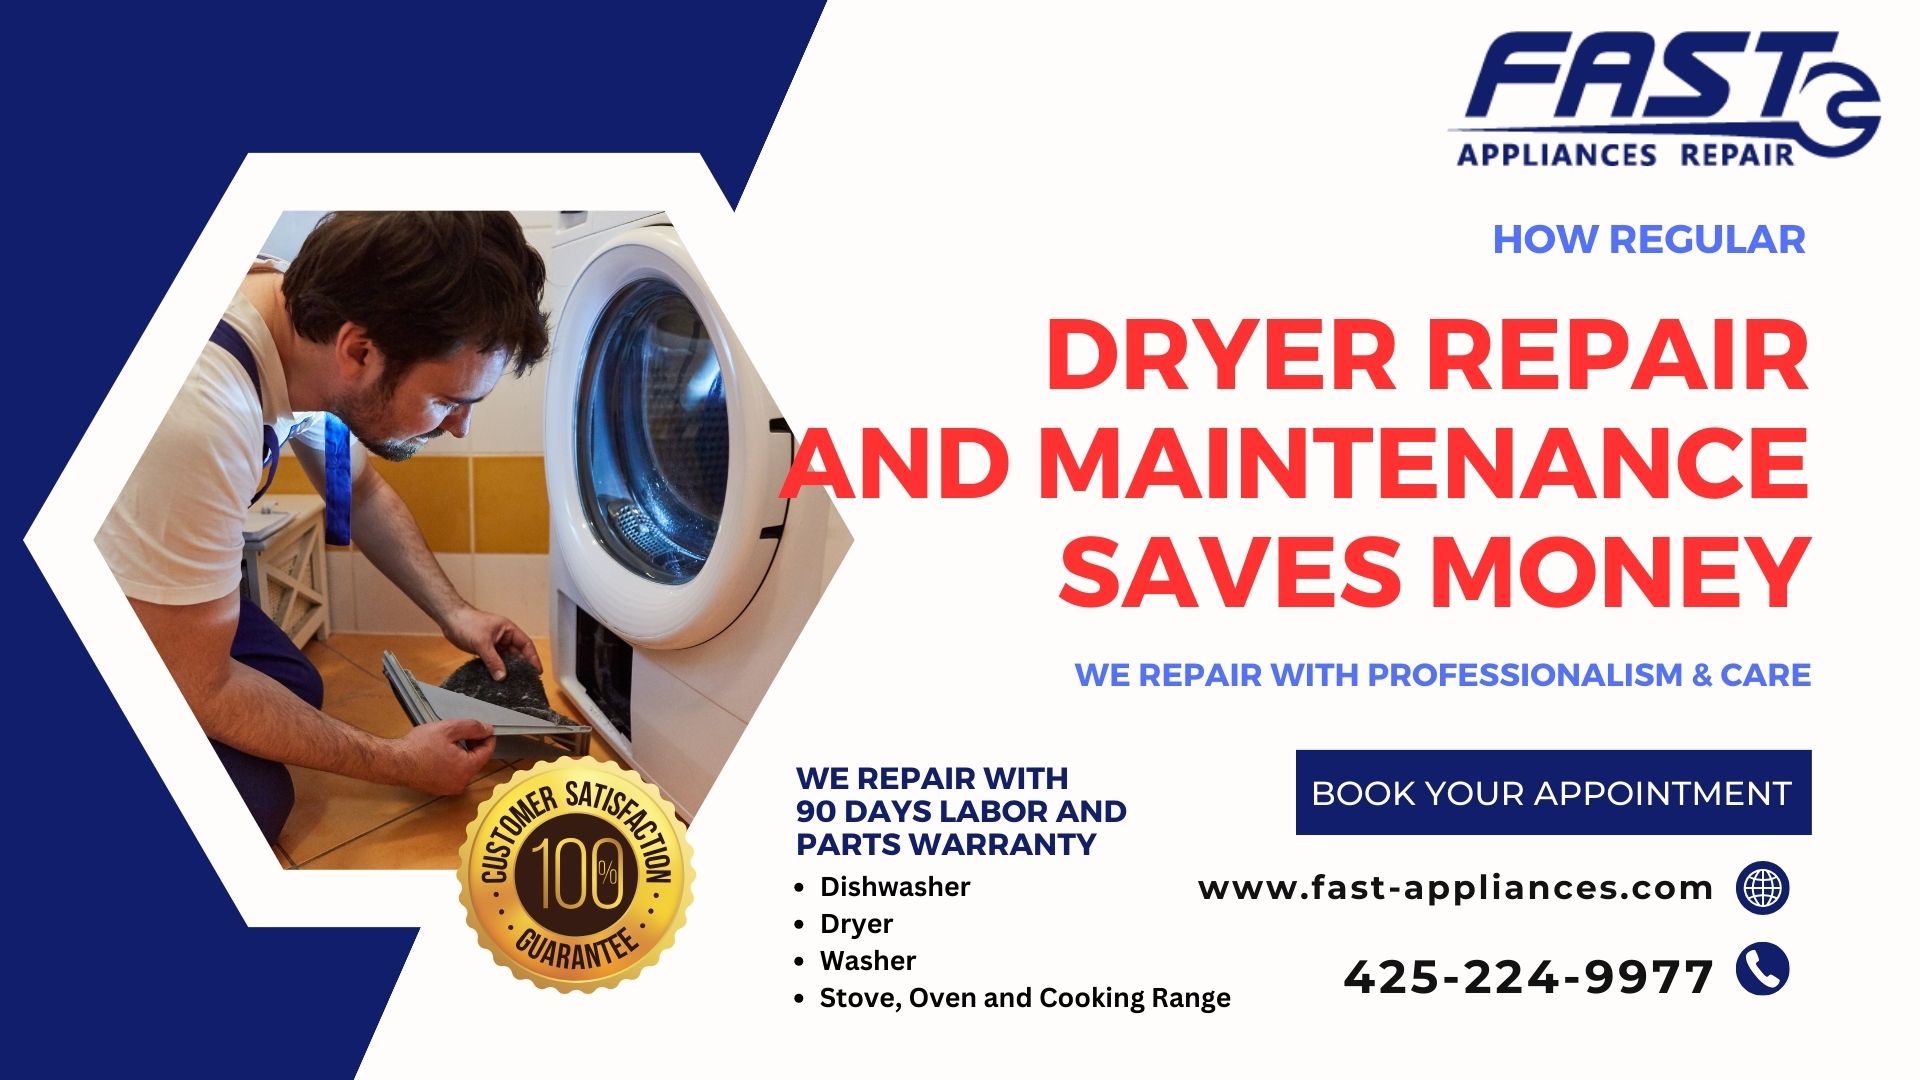 How Regular Dryer Repair and Maintenance Saves Money